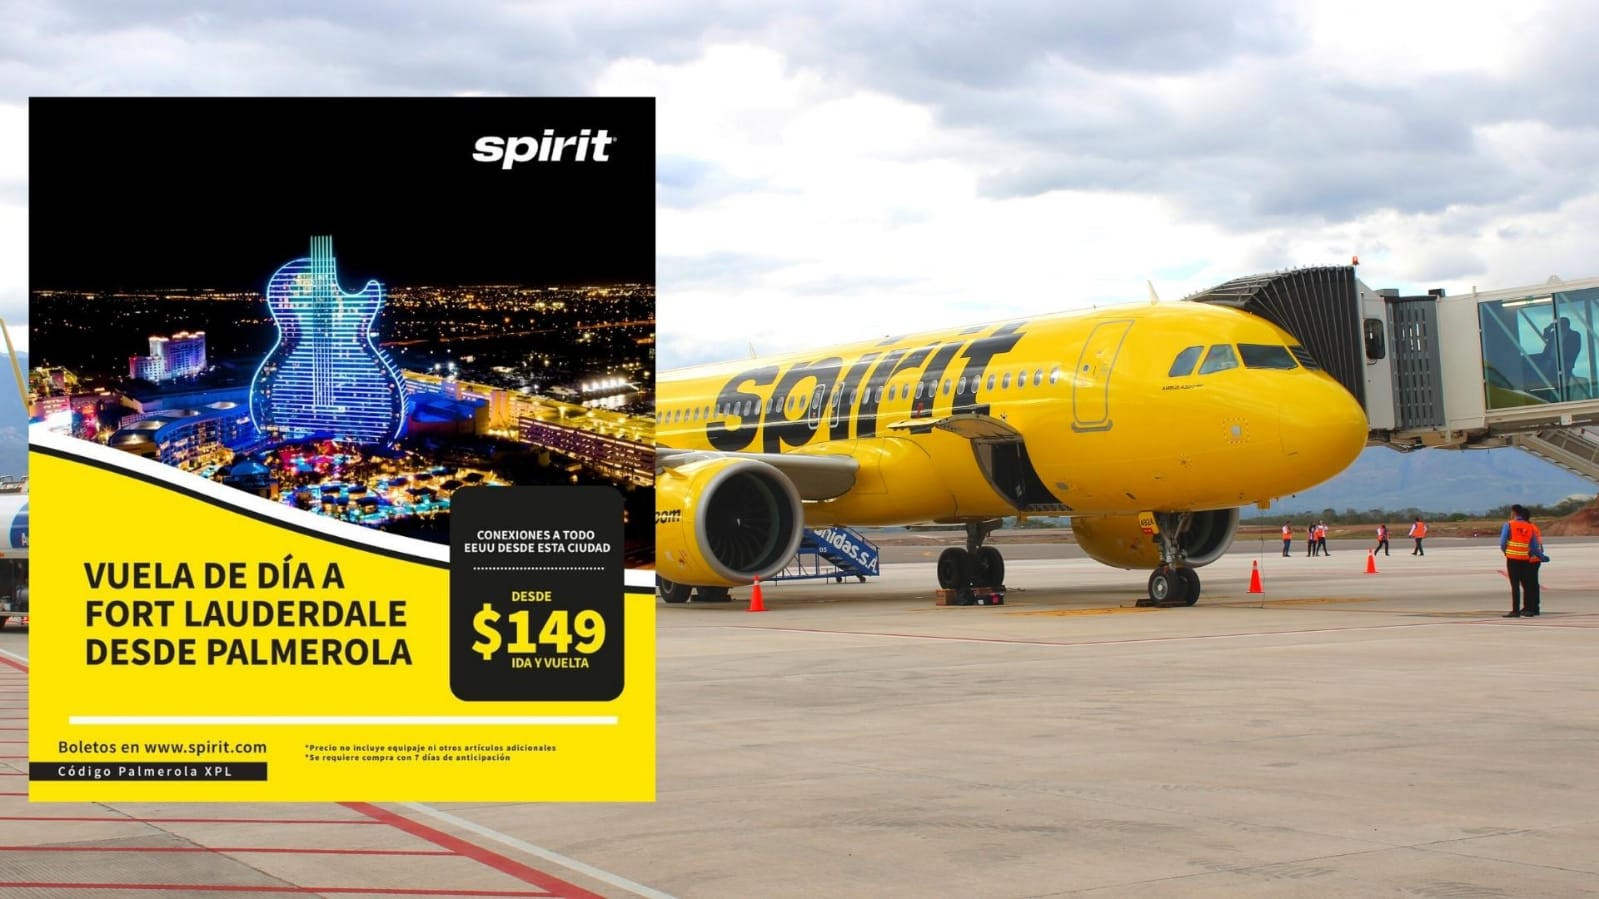 Spirit inicia vuelos de día a Fort Lauderdale a $149 ida y vuelta desde Palmerola